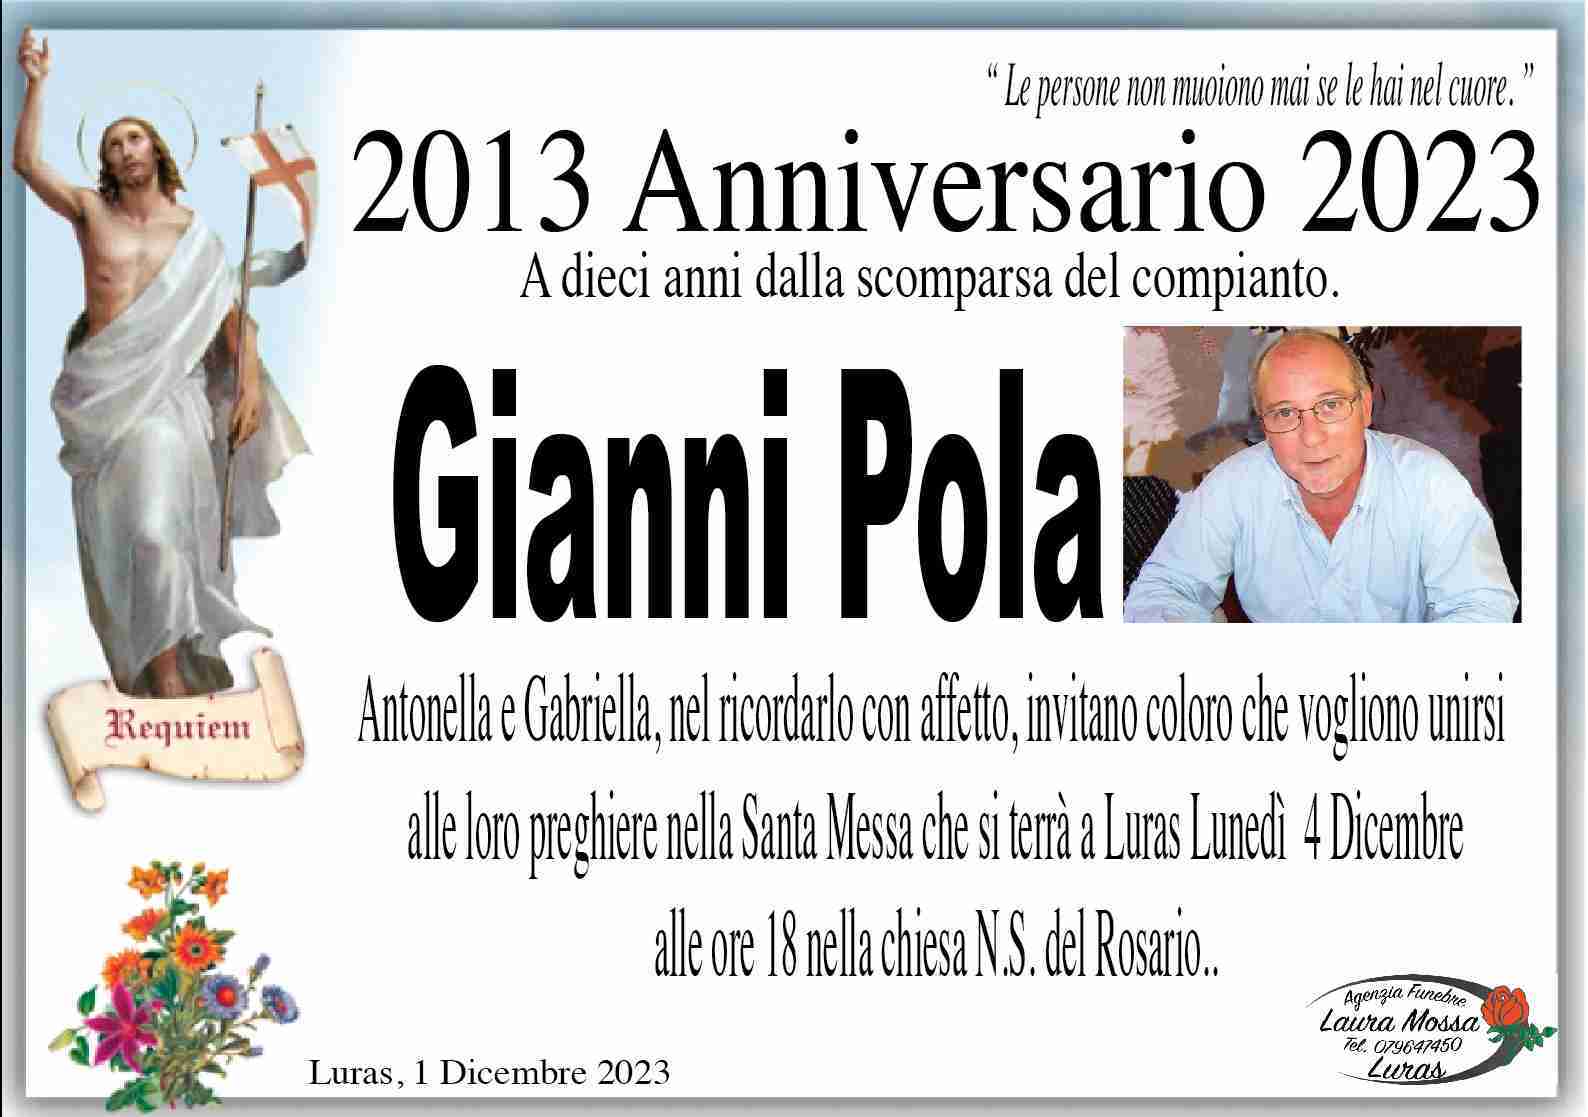 Gianni Pola